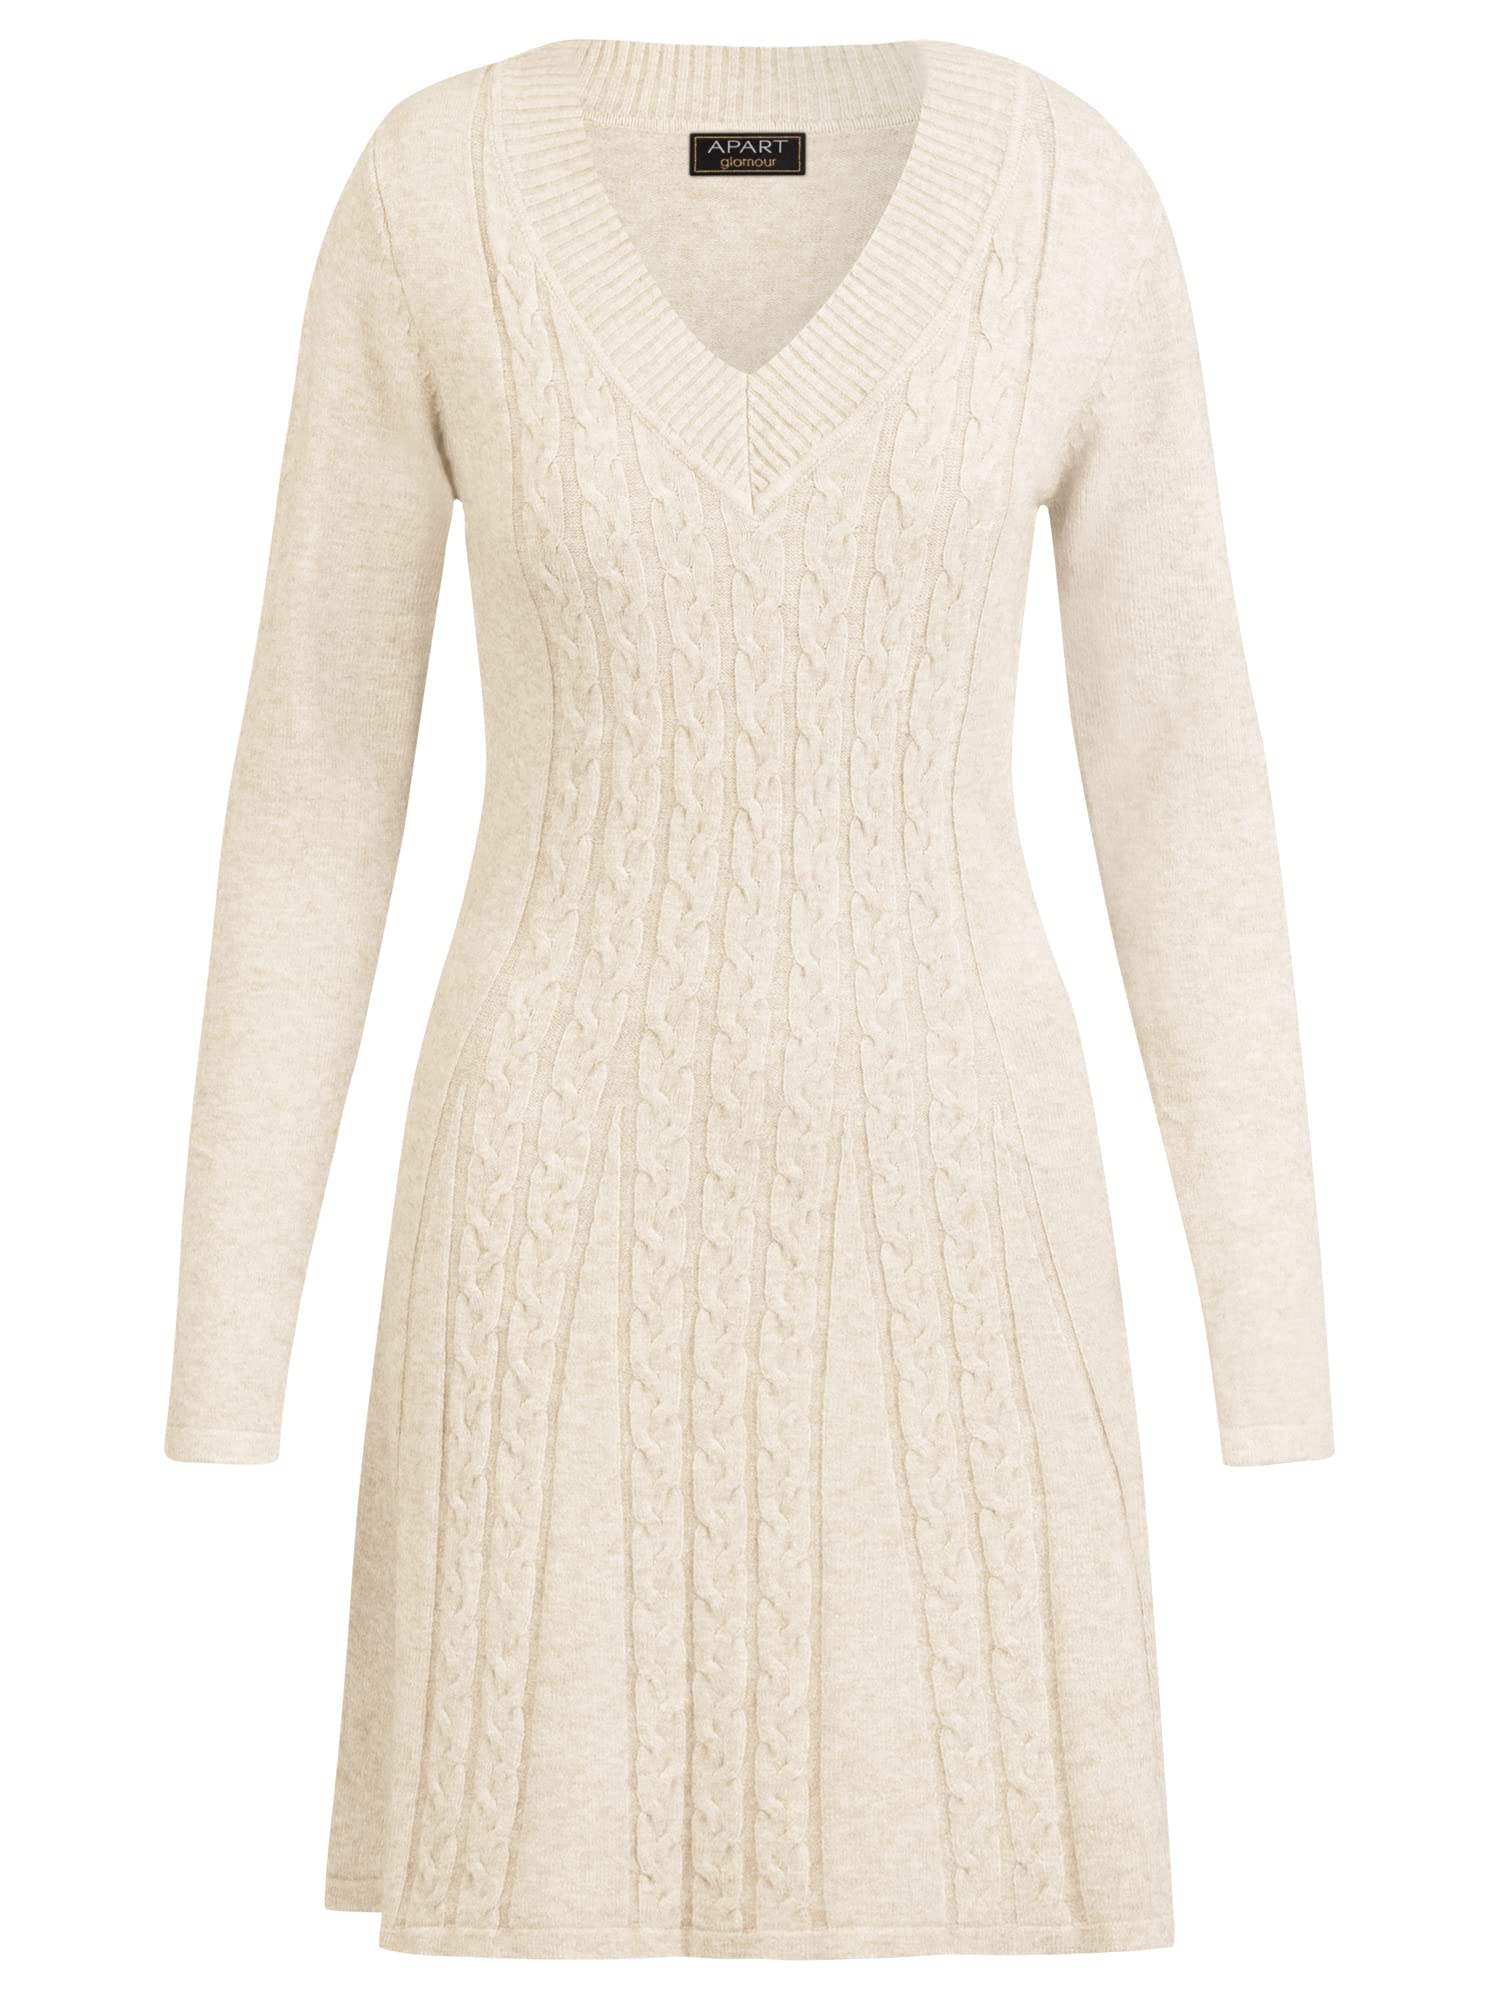 ApartFashion Damen Knitted Dress, Beige, 38 EU